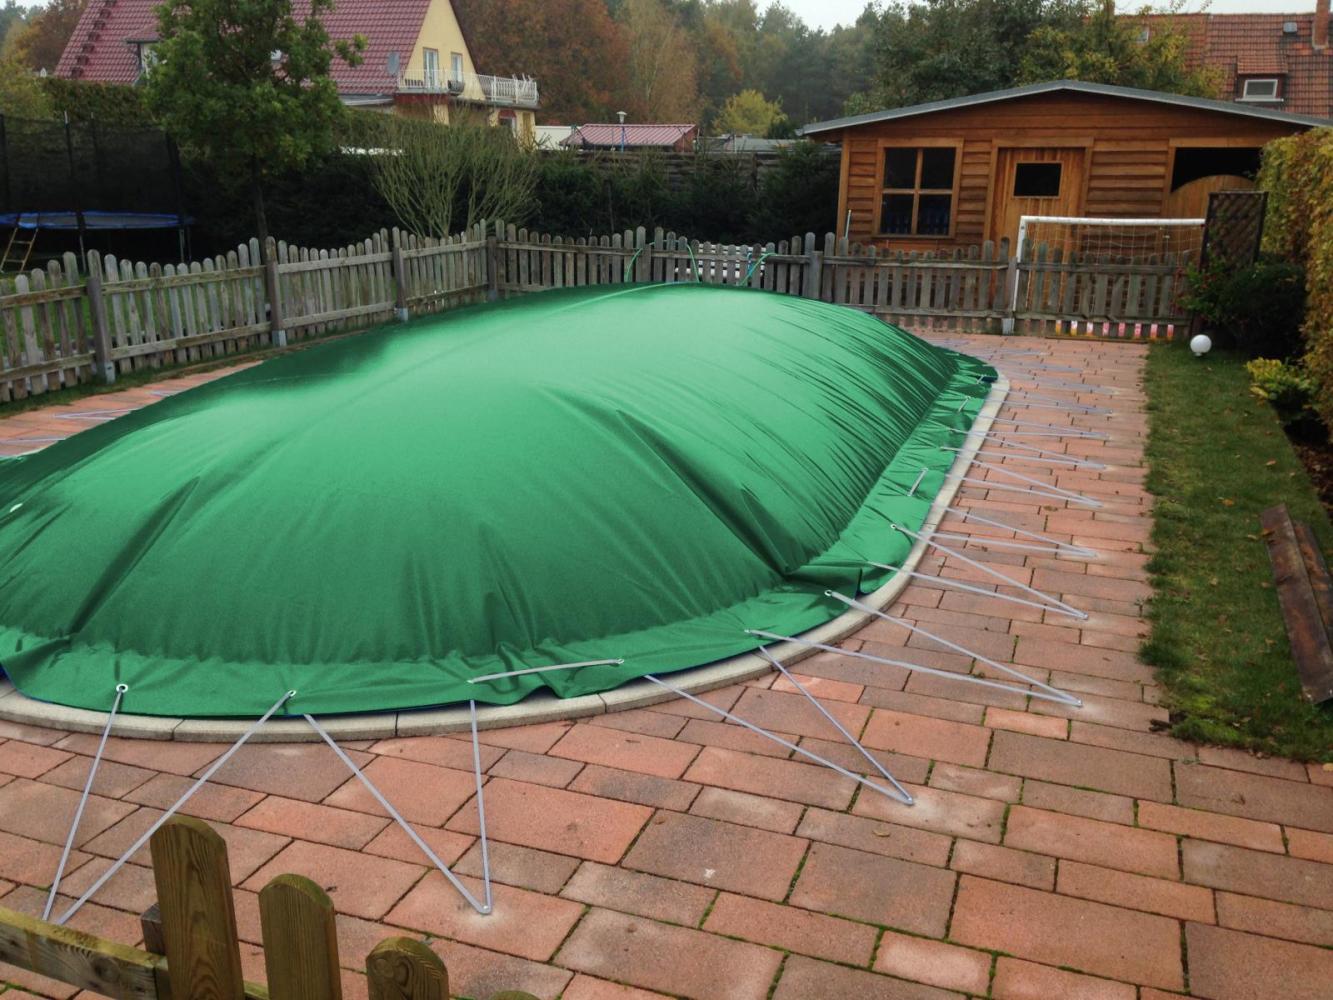 aufblasbare Winterplane für ovale Pools 7,30 x 4,60 cm Grün Bild 1